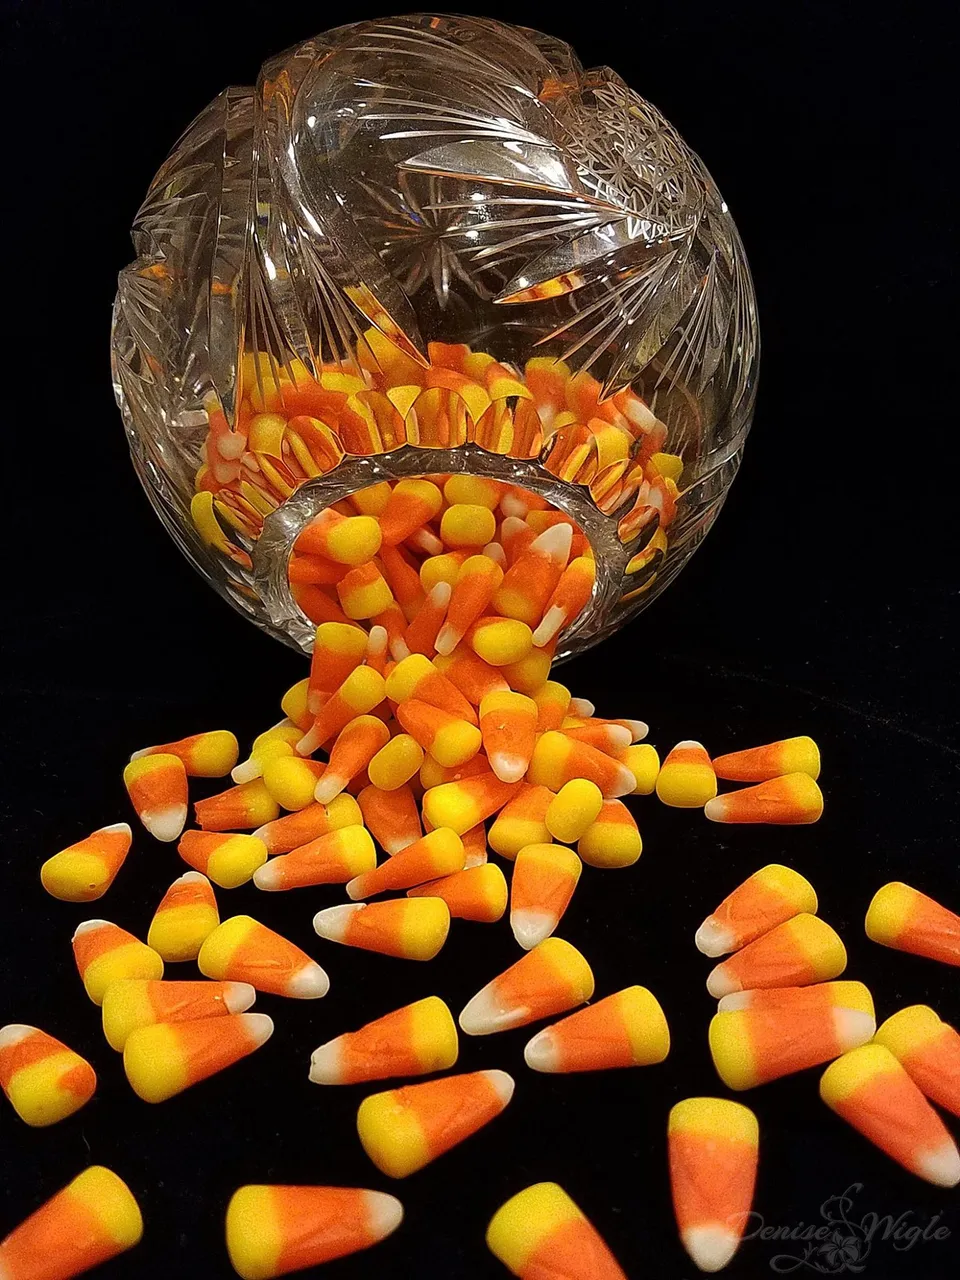 candy corn.jpg